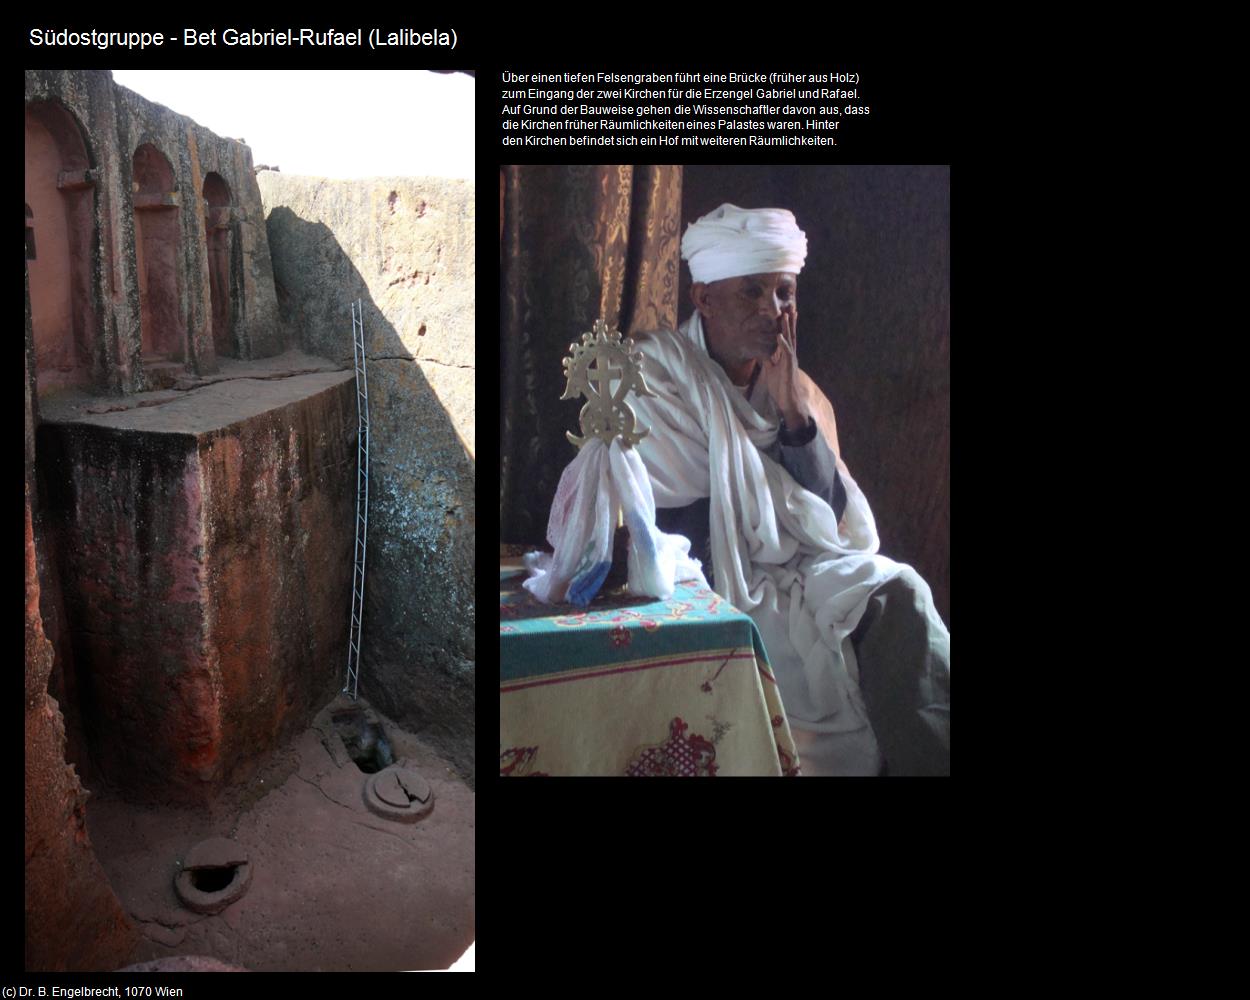 Bet Gabriel-Rufael  (Lalibela) in Äthiopien